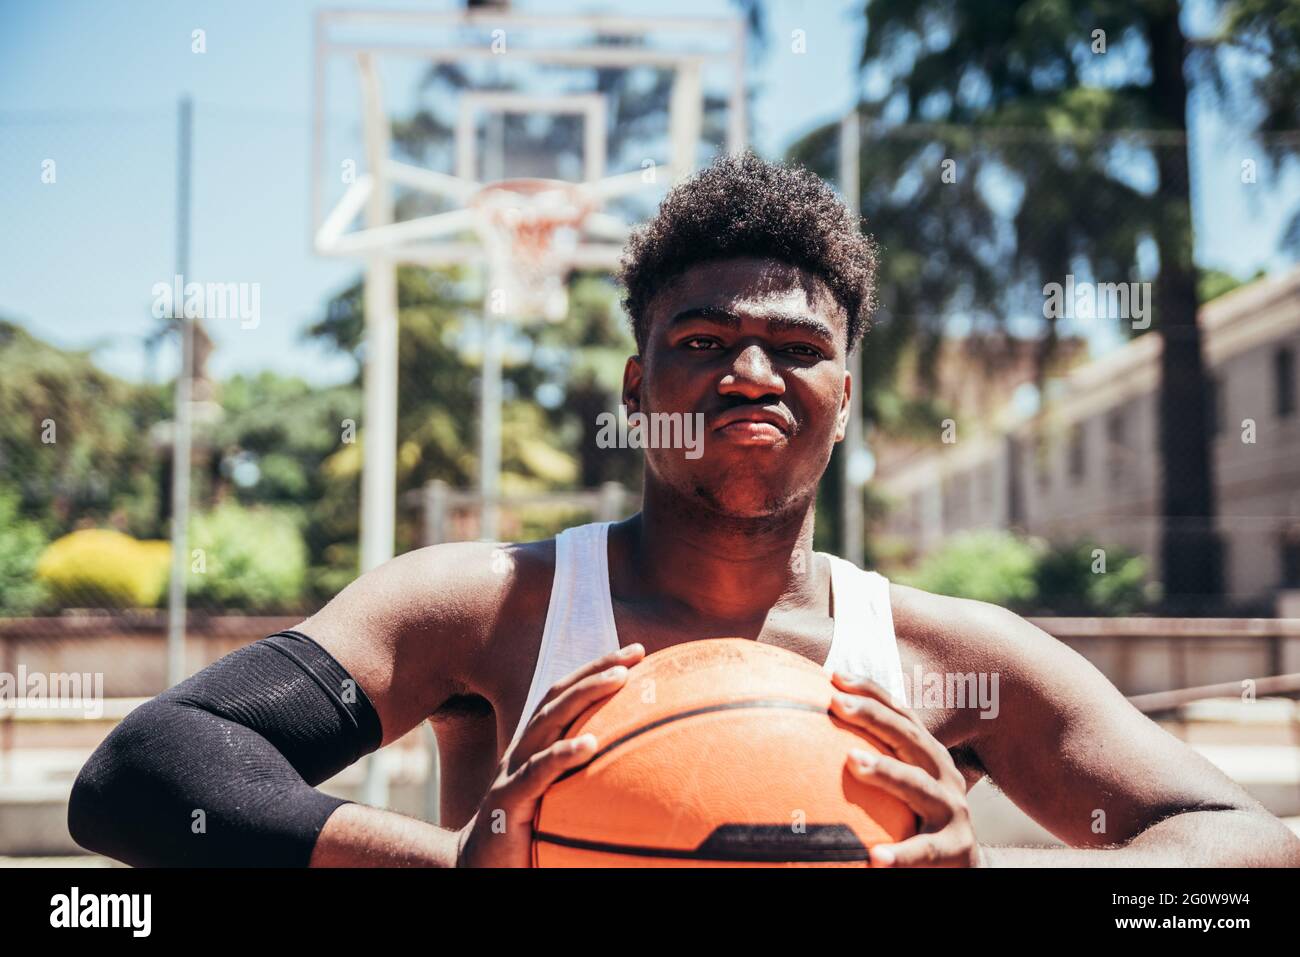 Portrait d'un garçon afro noir furieux avec un look provocateur en serrant le basket-ball avec ses mains. Prêt à jouer. Banque D'Images